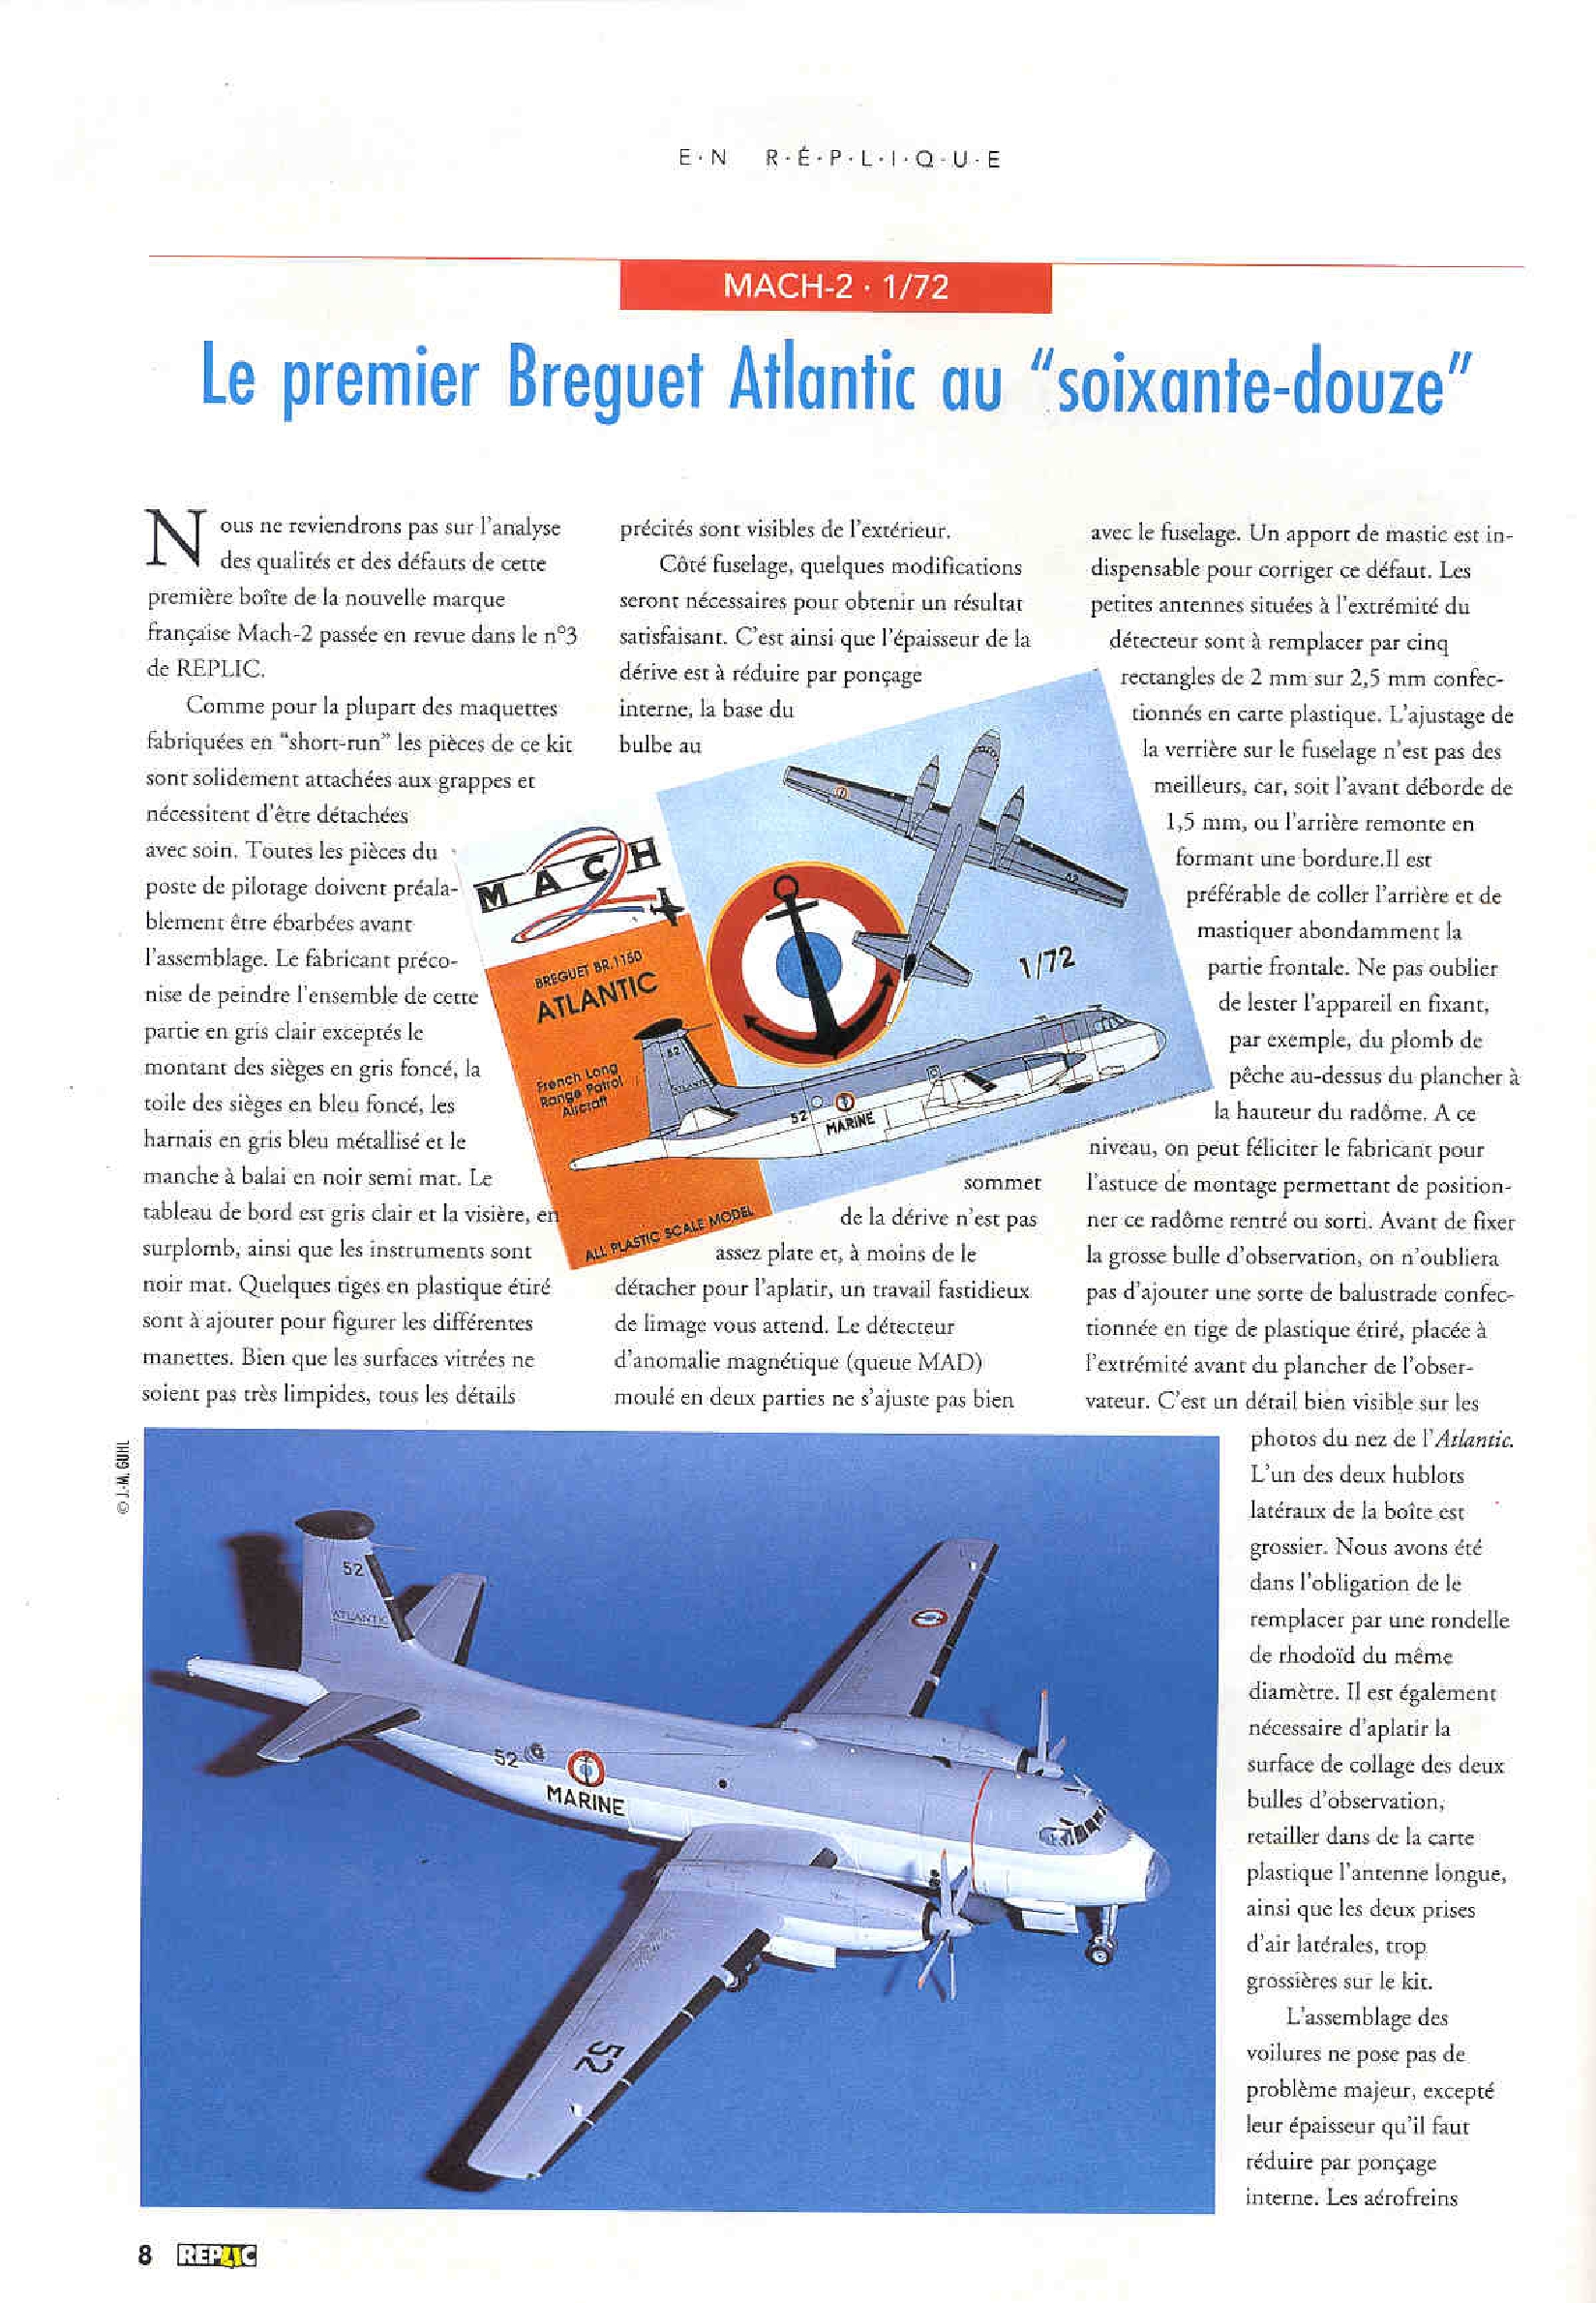 Replic 004 - A-6 Intruder, Breguet Atlantic